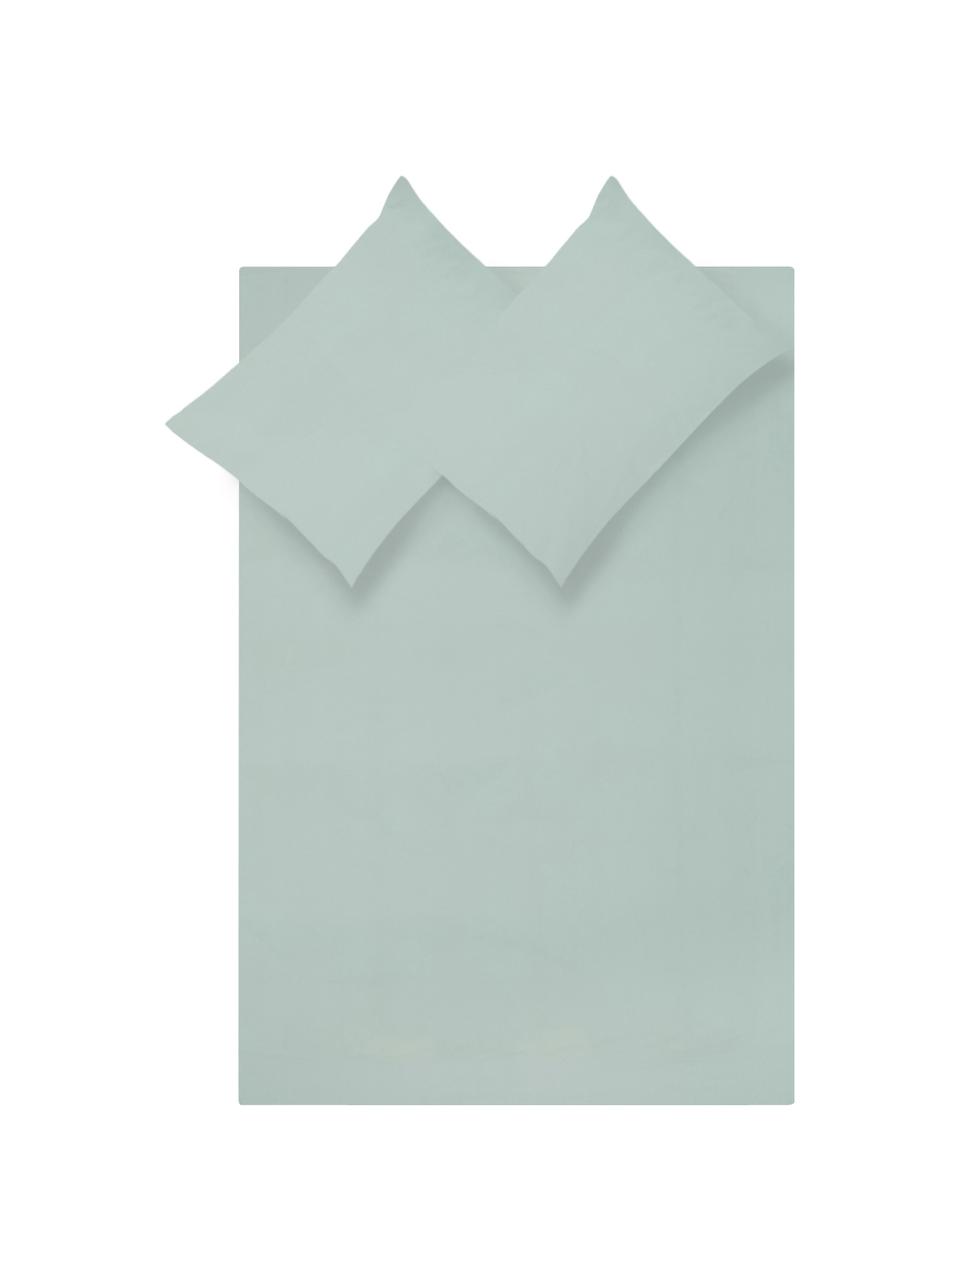 Parure copripiumino in percalle Elsie, Tessuto: percalle Densità del filo, Verde salvia, 255 x 200 cm + 2 federe 50 x 80 cm